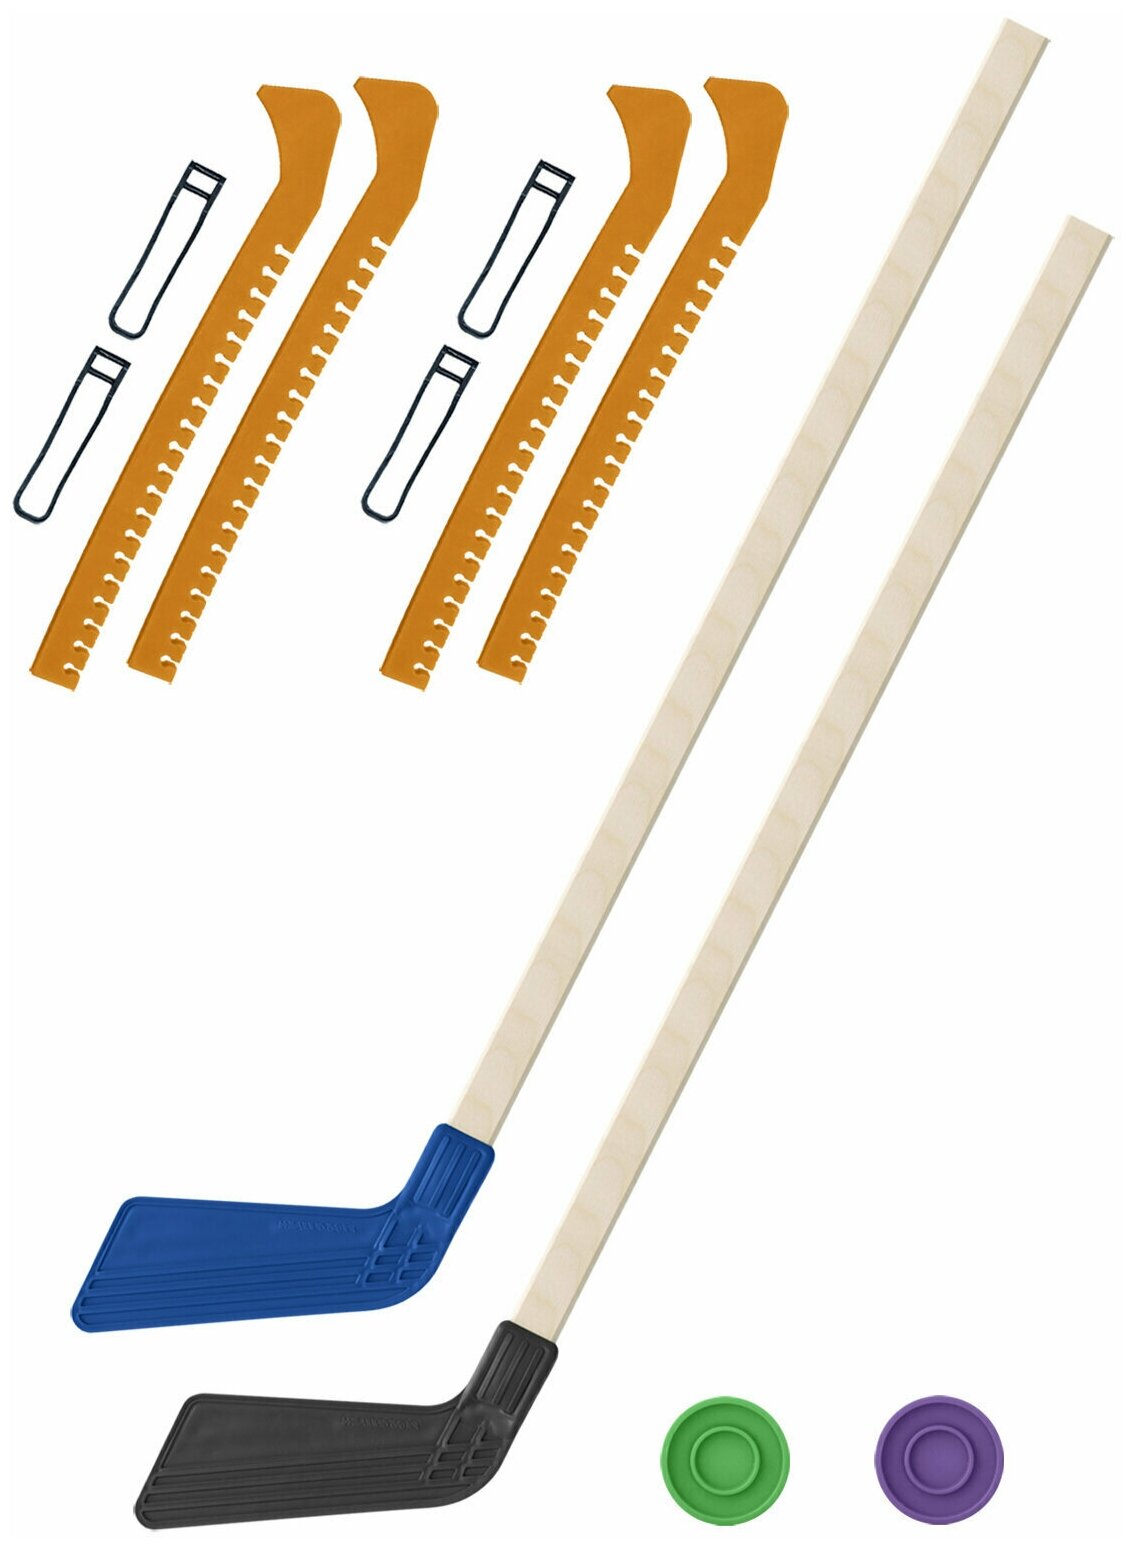 Детский хоккейный набор для игр на улице, для зимы, для лета Клюшка хоккейная детская 2 шт. синяя и чёрная 80 см+2 шайбы+Чехлы для коньков желтые 2 шт